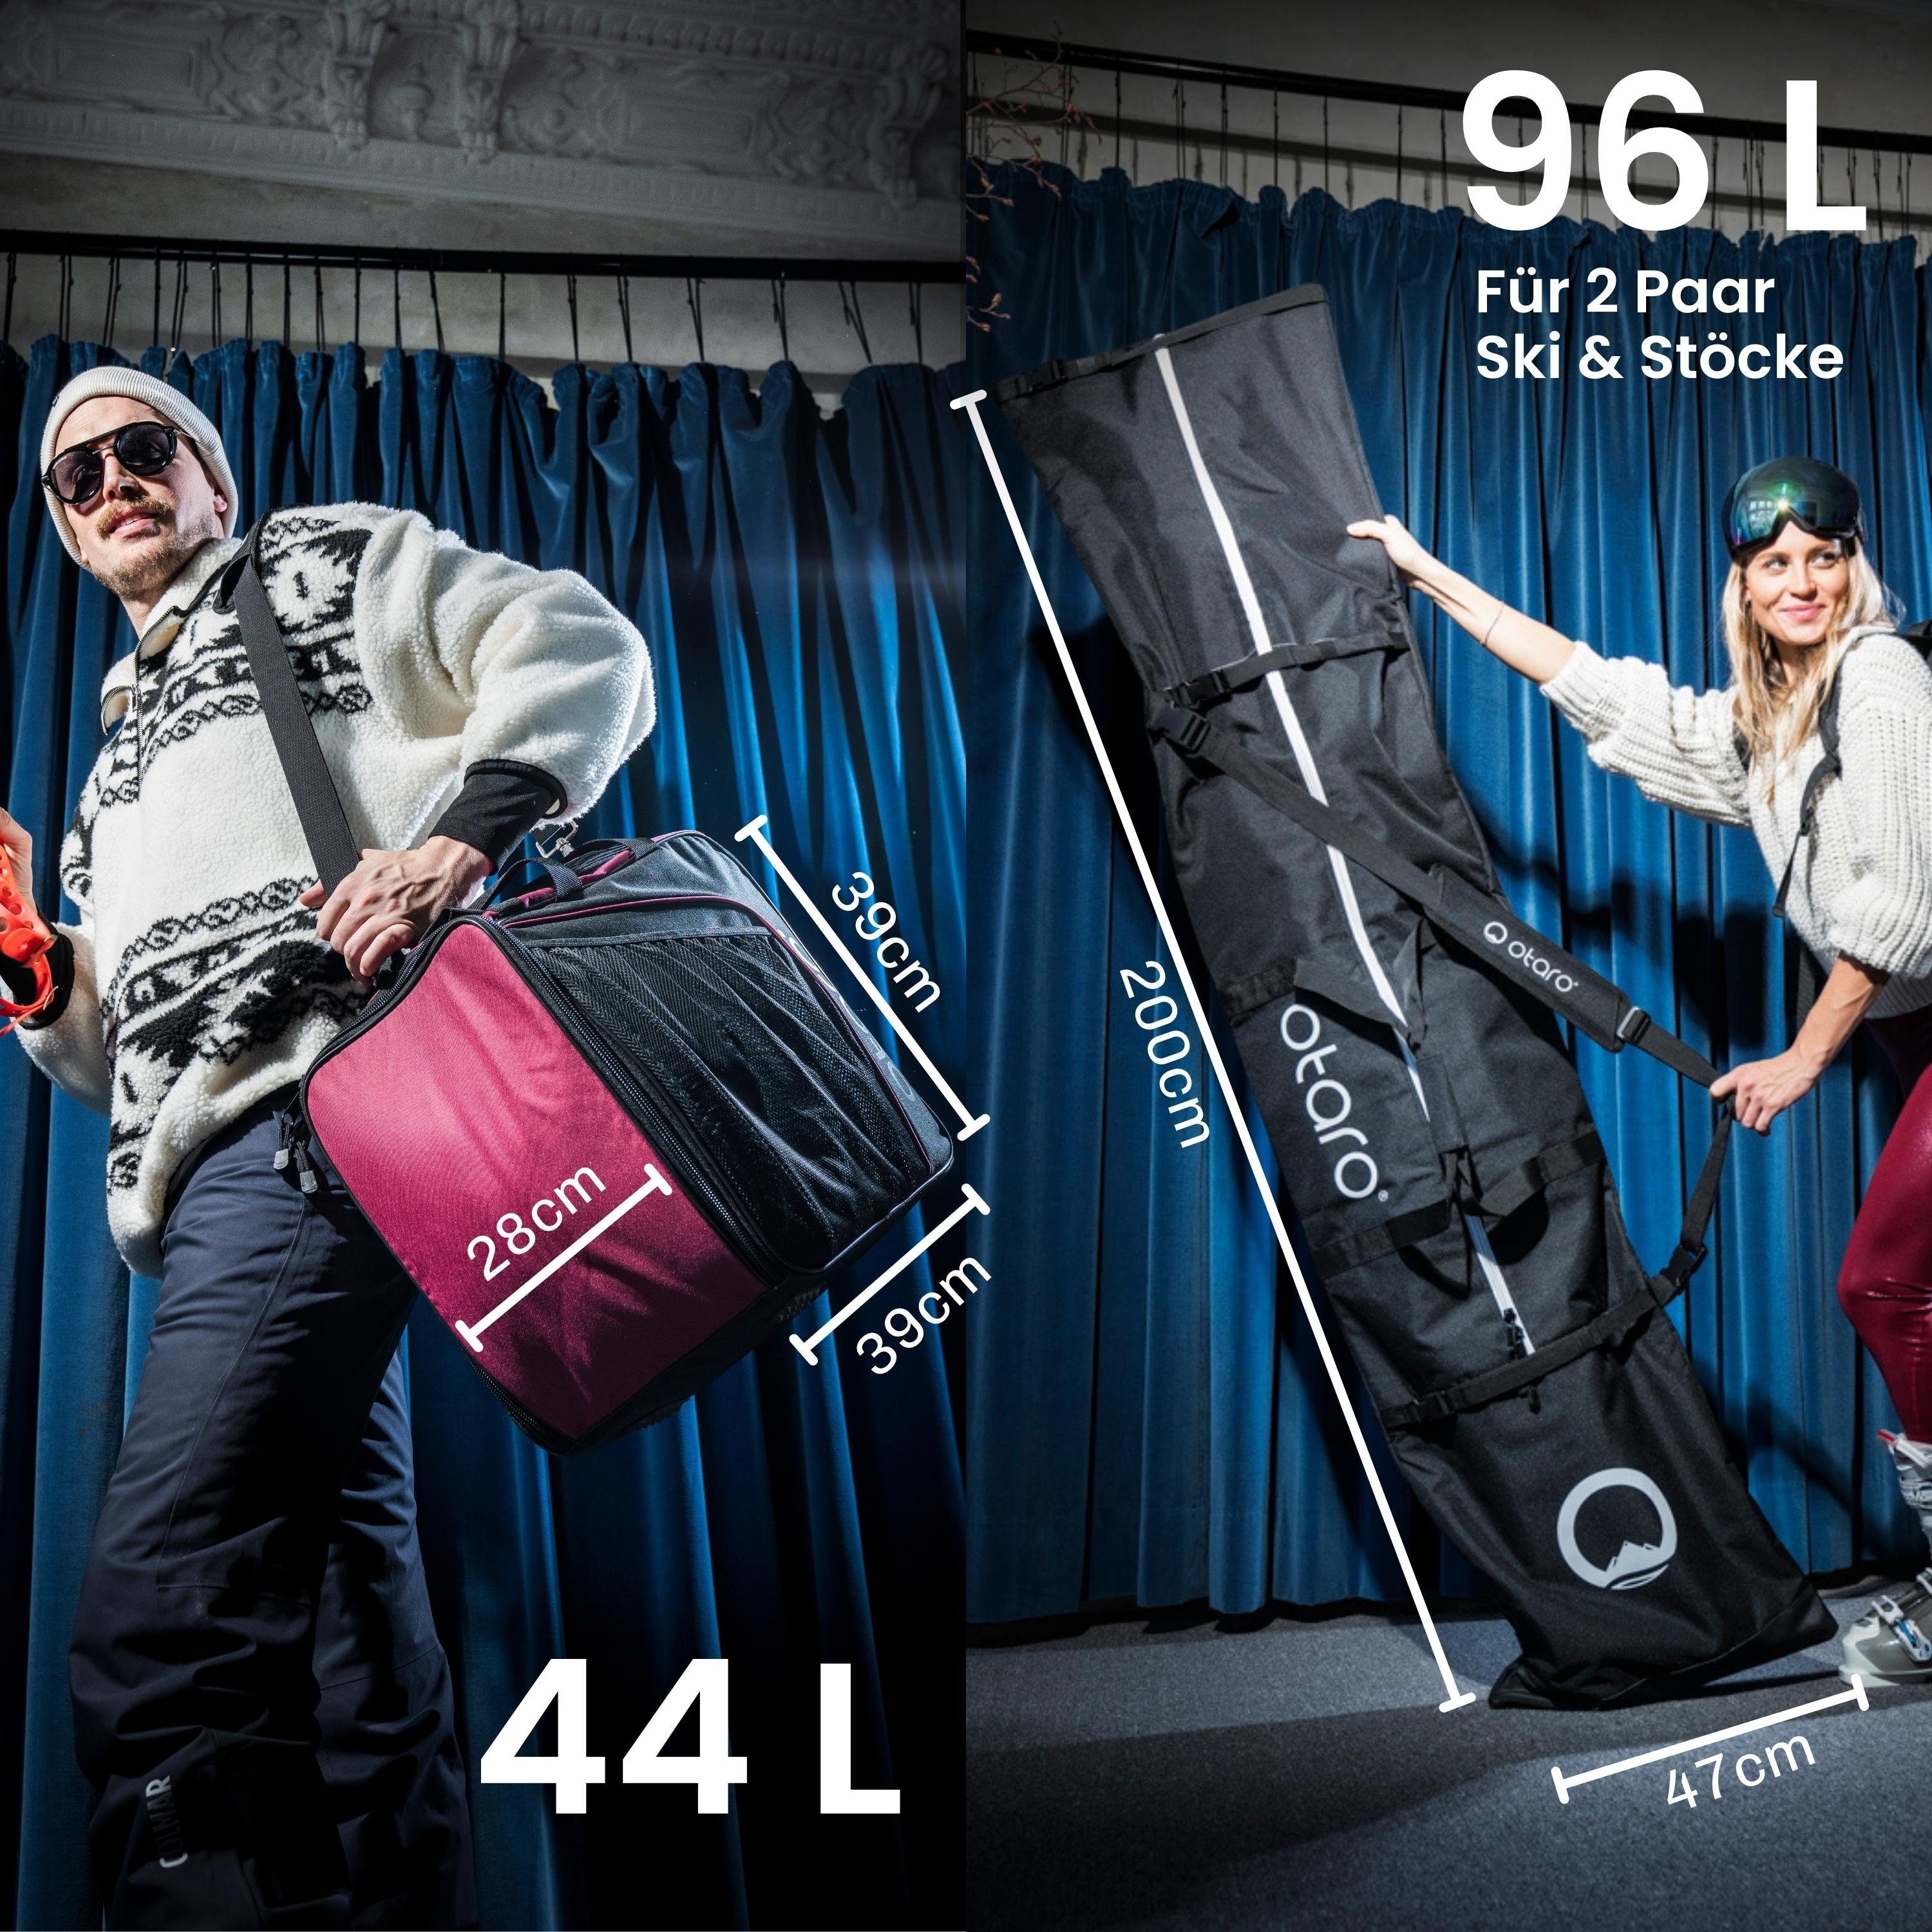 deine Ski für Ski Ausrüstung, für ausklappbare Otaro & 2 2 für Skitasche, Bordeauxrot Schwarz + durchdacht, Skischuhtasche Perfekt Stöcke) Paar (Schutz Sporttasche Standfläche, Set: Classic-Set Paar